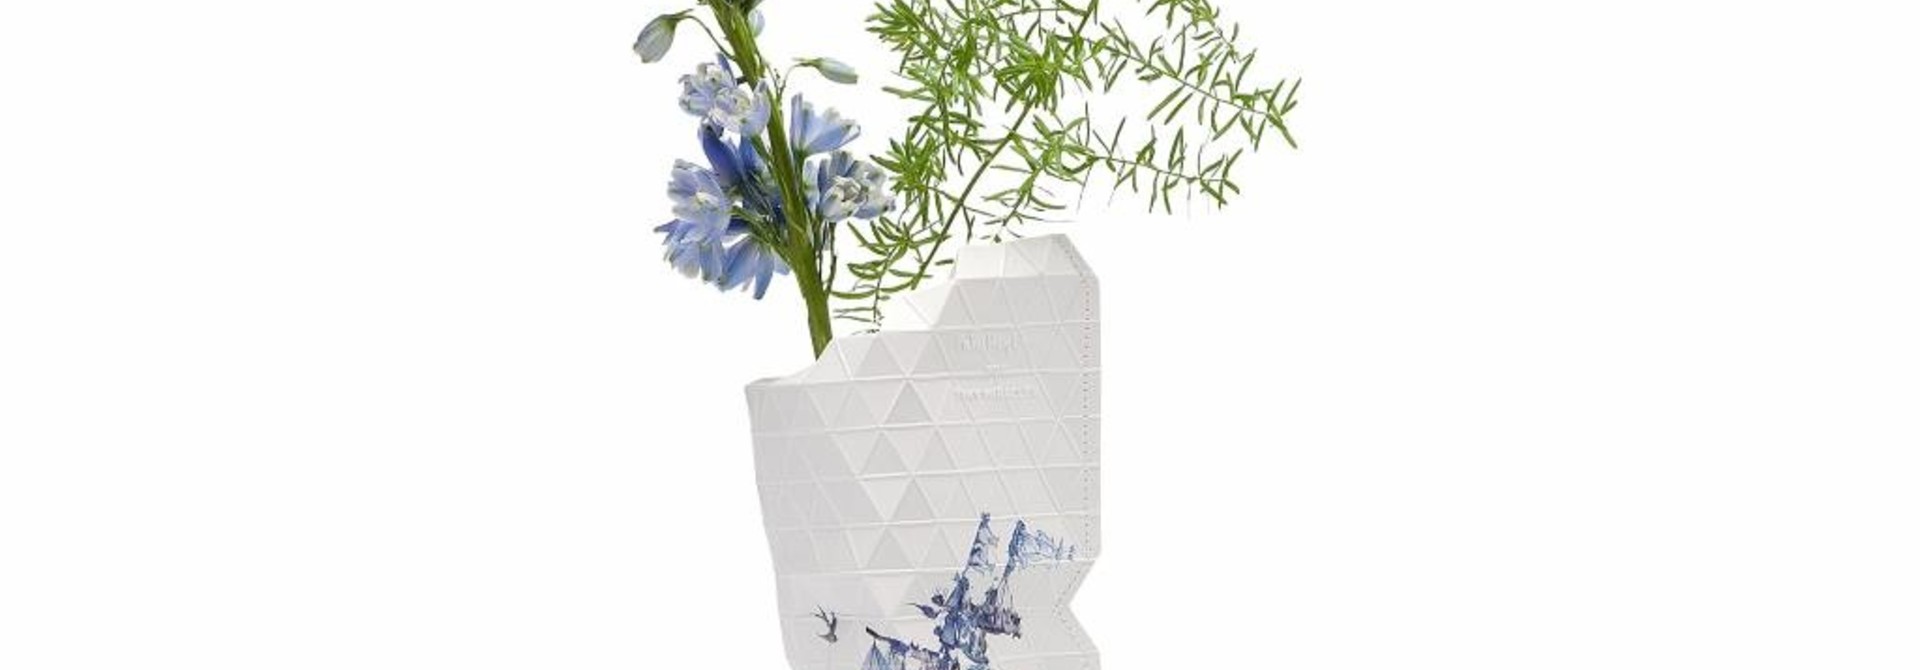 Paper Vase Cover Delft Blue (small)